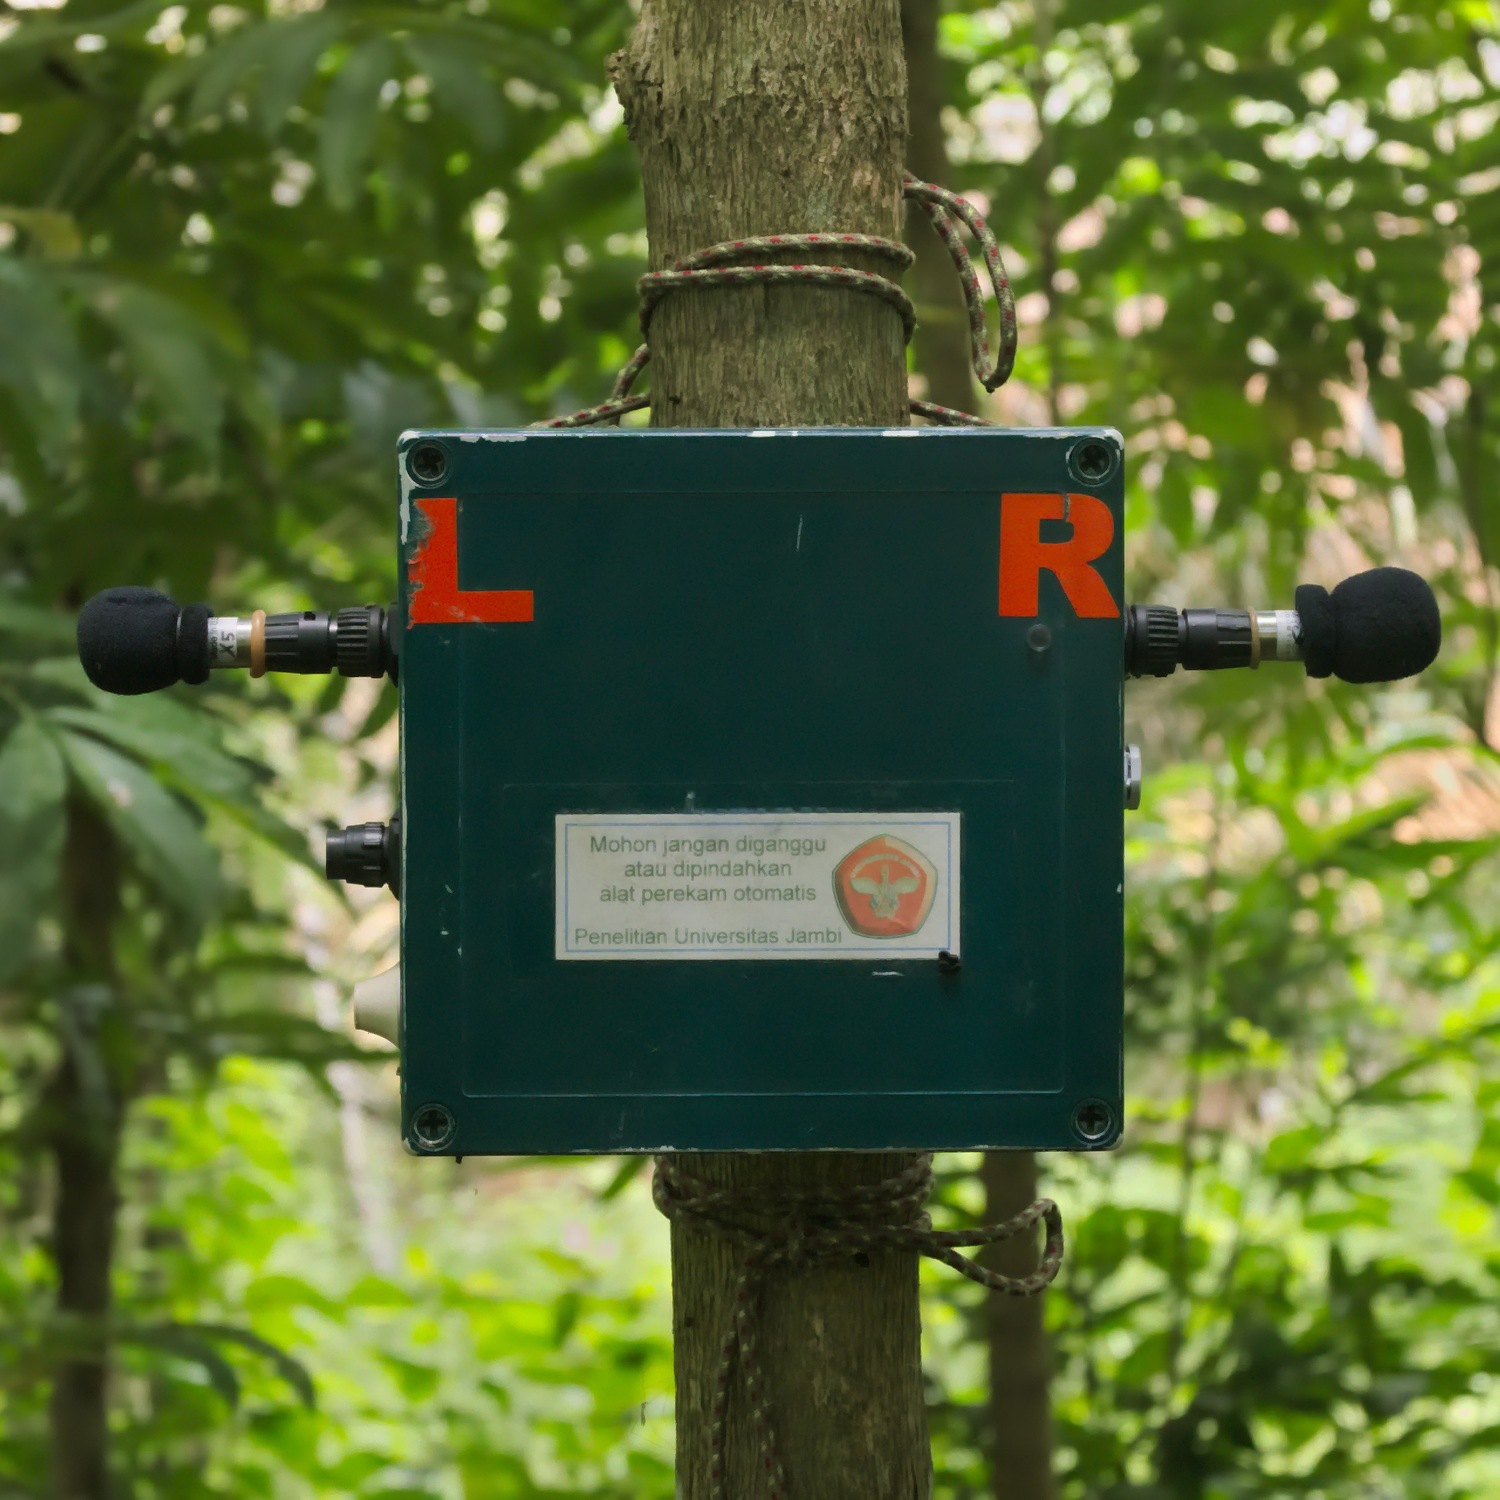 Ein programmierbares Tonaufnahmegerät wird in Jambi, Indonesien, eingesetzt, um die Artenvielfalt zu erfassen.